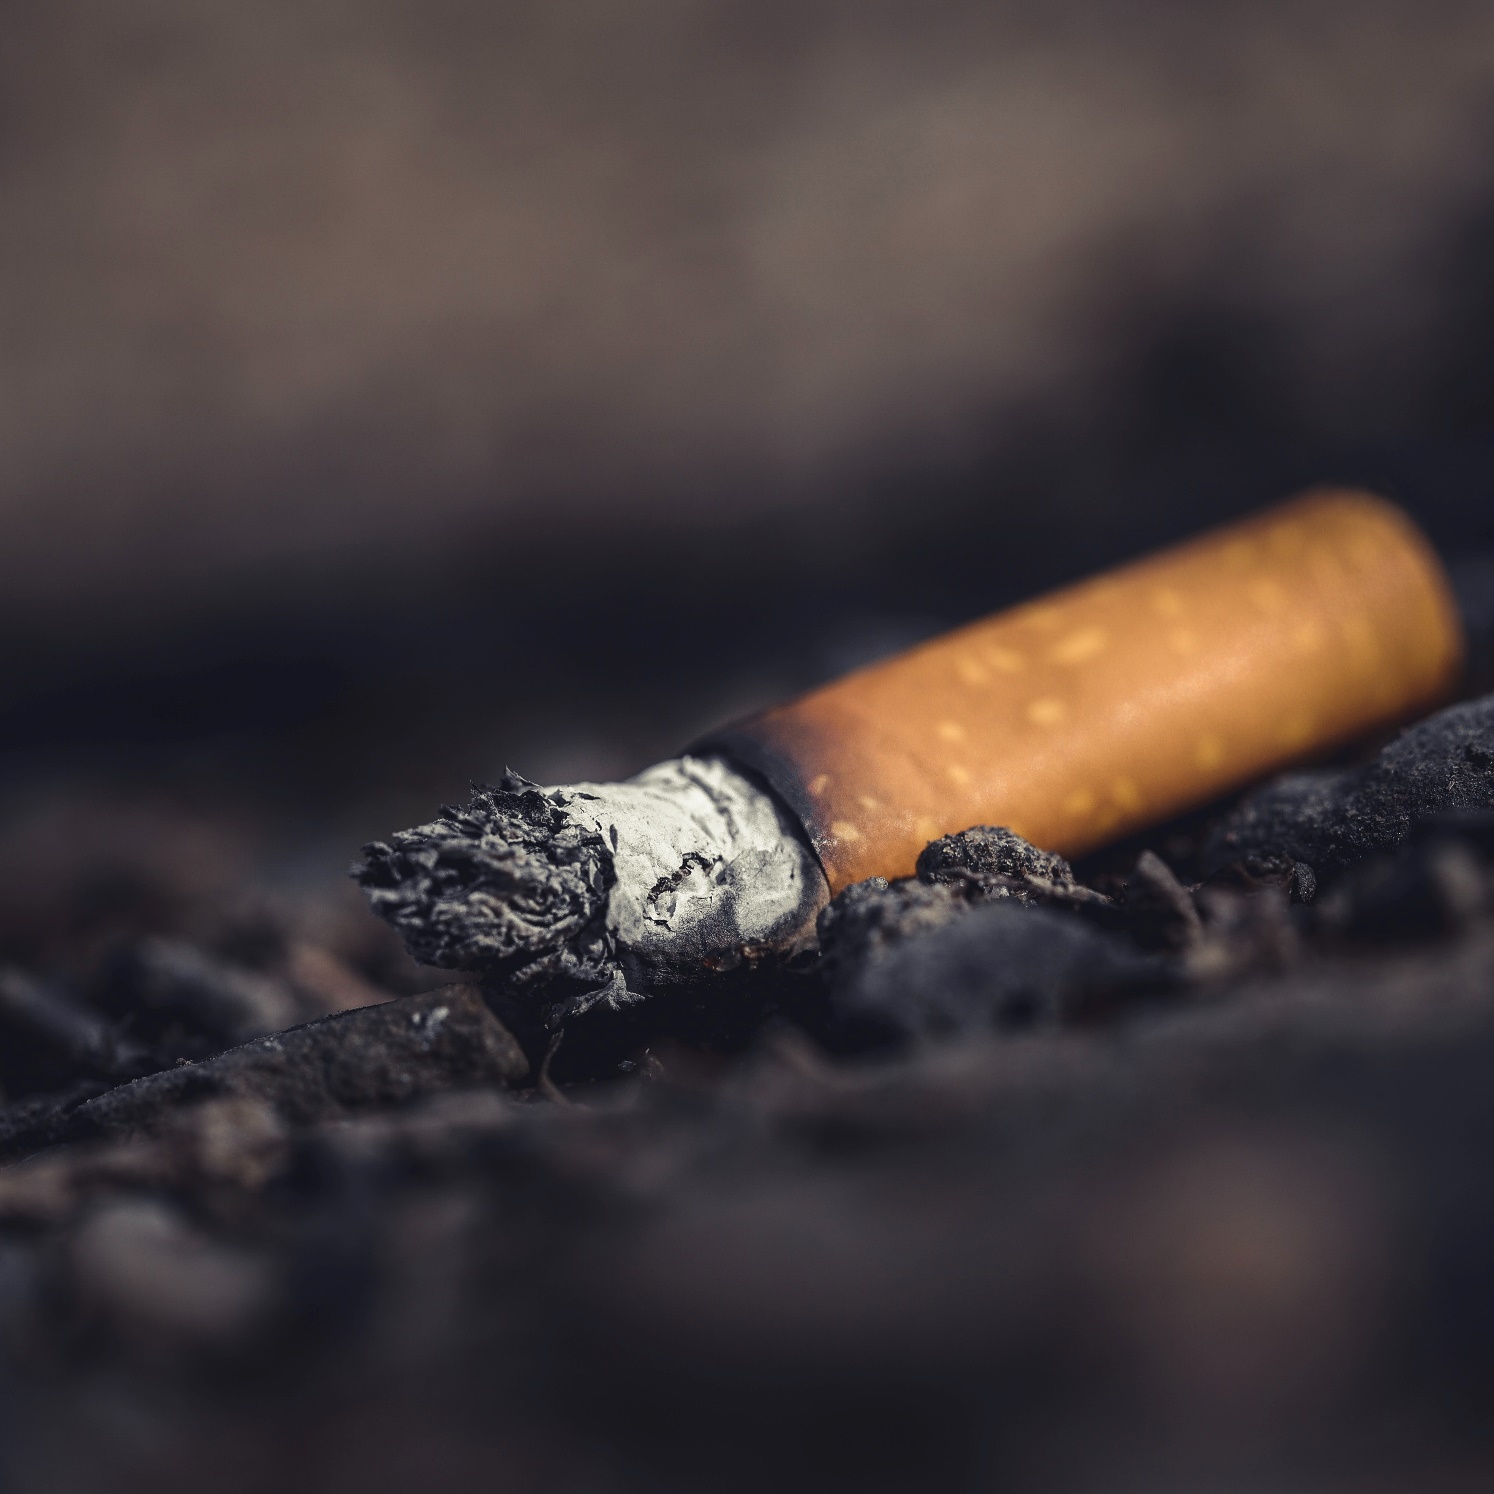 Châu Á và dịch chuyển “không khói” của ngành thuốc lá - Ảnh 2.